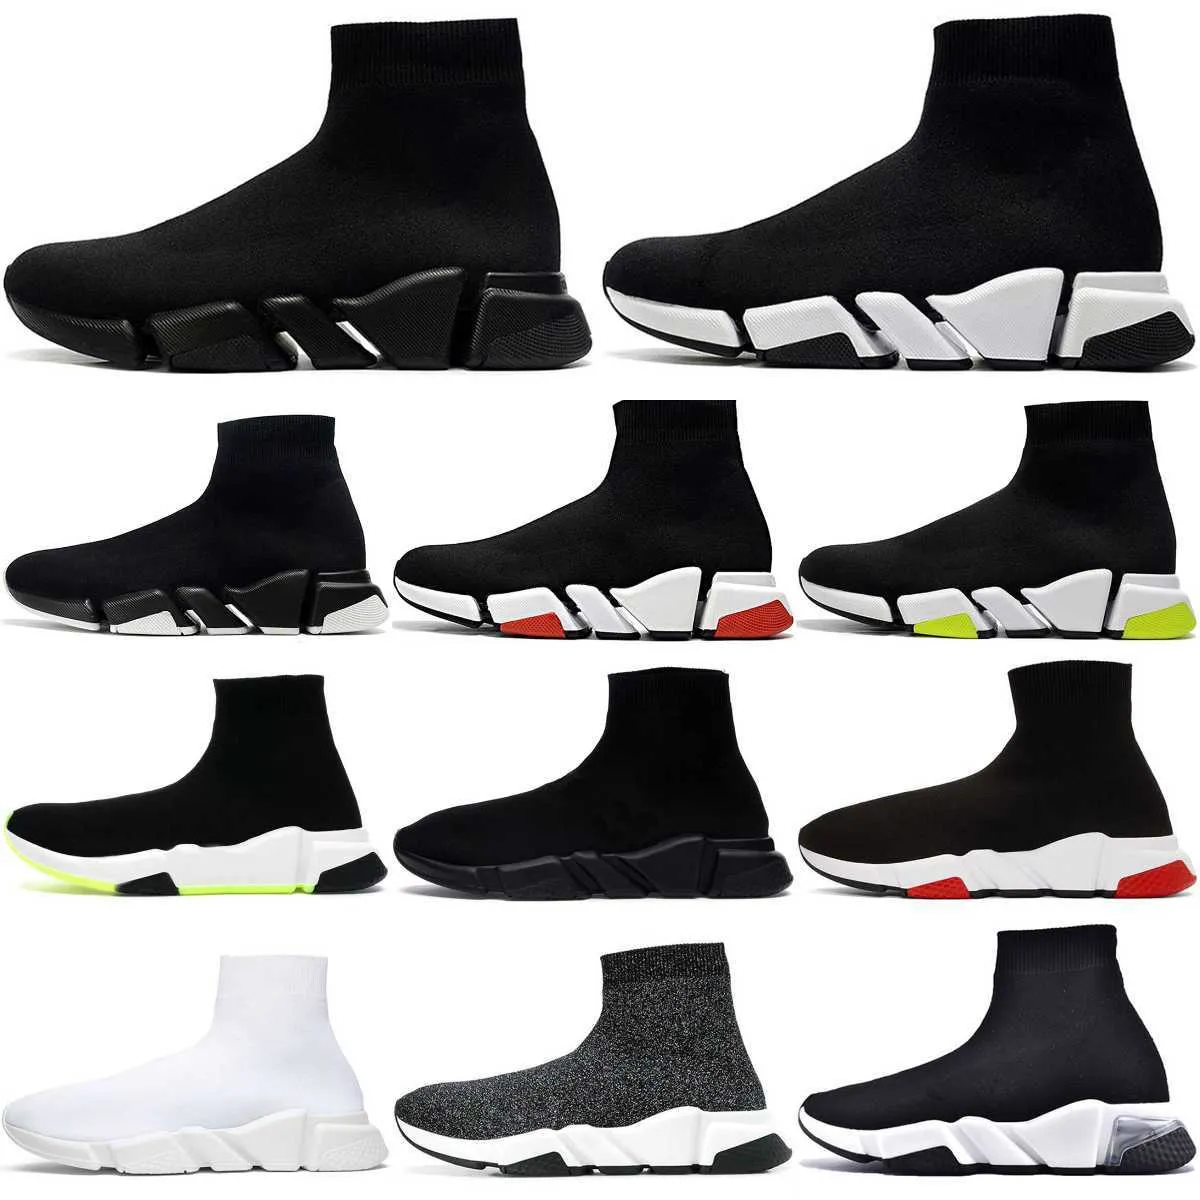 حذاء رياضي من ترينرز 2.0 V2 بنعل سميك ، حذاء رياضي للرجال والنساء ، جوارب Tripler S ، حذاء أسود ، أبيض ، أزرق فاتح ، فضي ، بني روبي ، جرافيتي ، مصمم فاخر عتيق